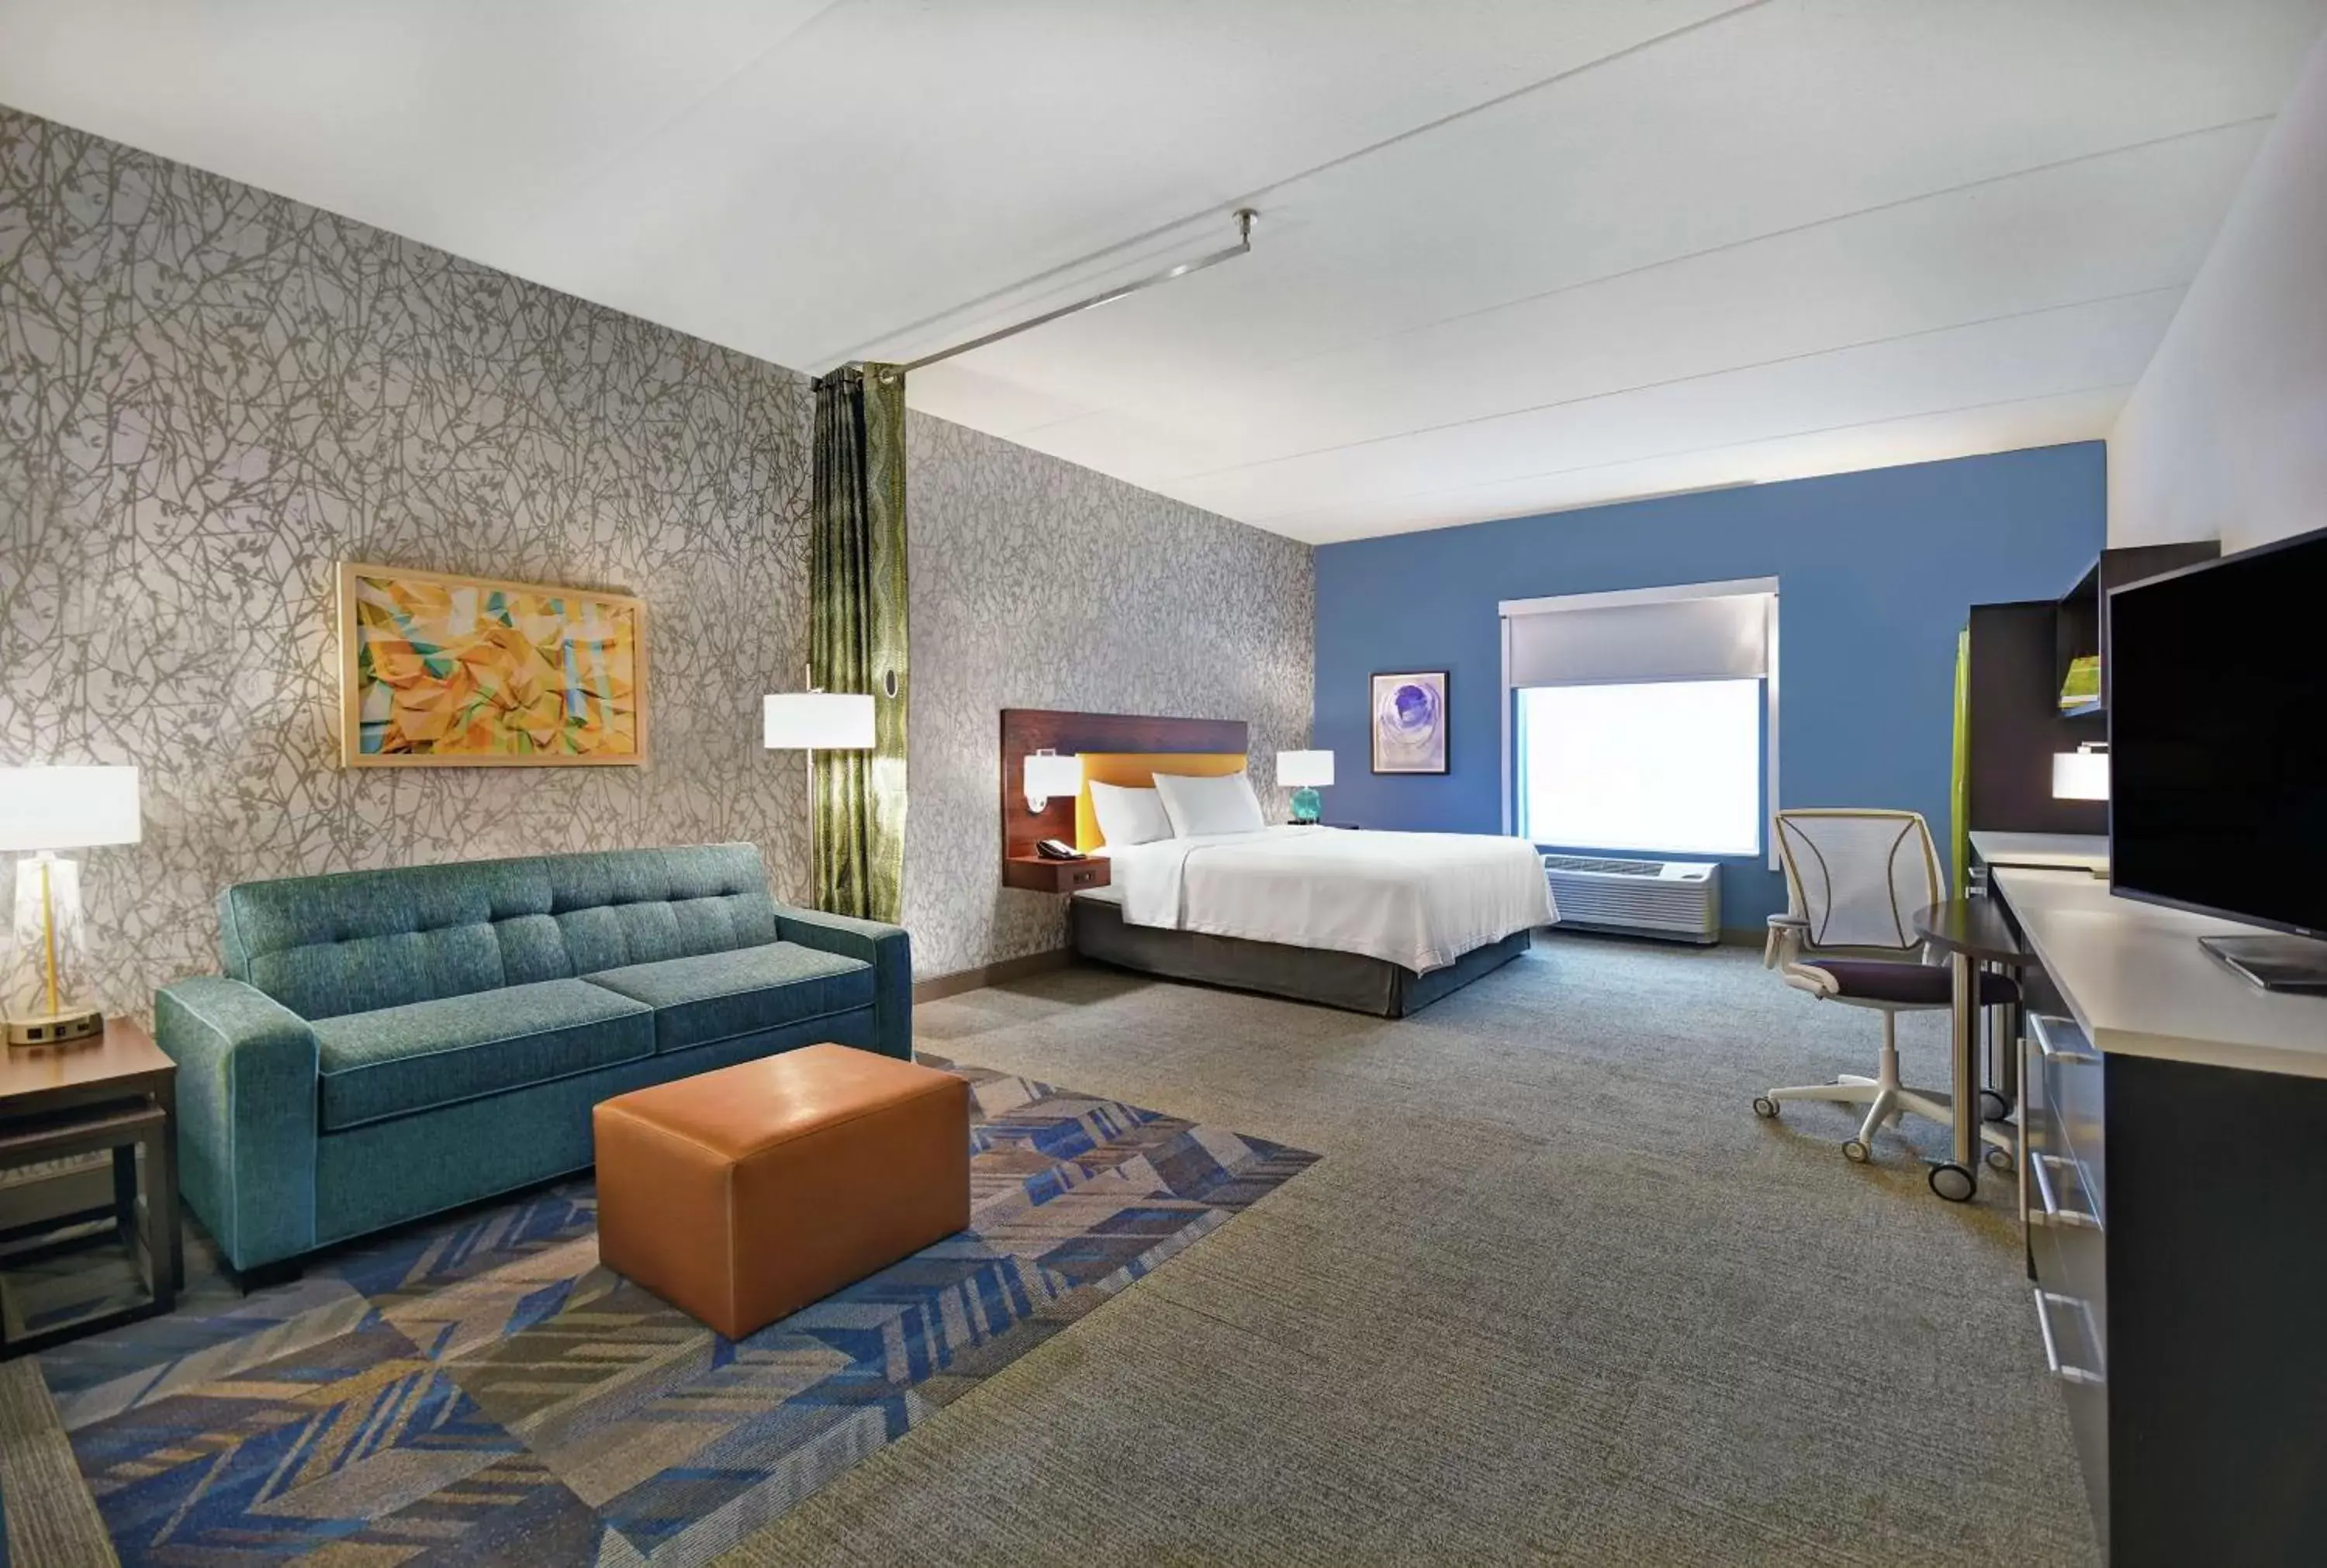 Bedroom in Home2 Suites By Hilton Lawrenceville Atlanta Sugarloaf, Ga